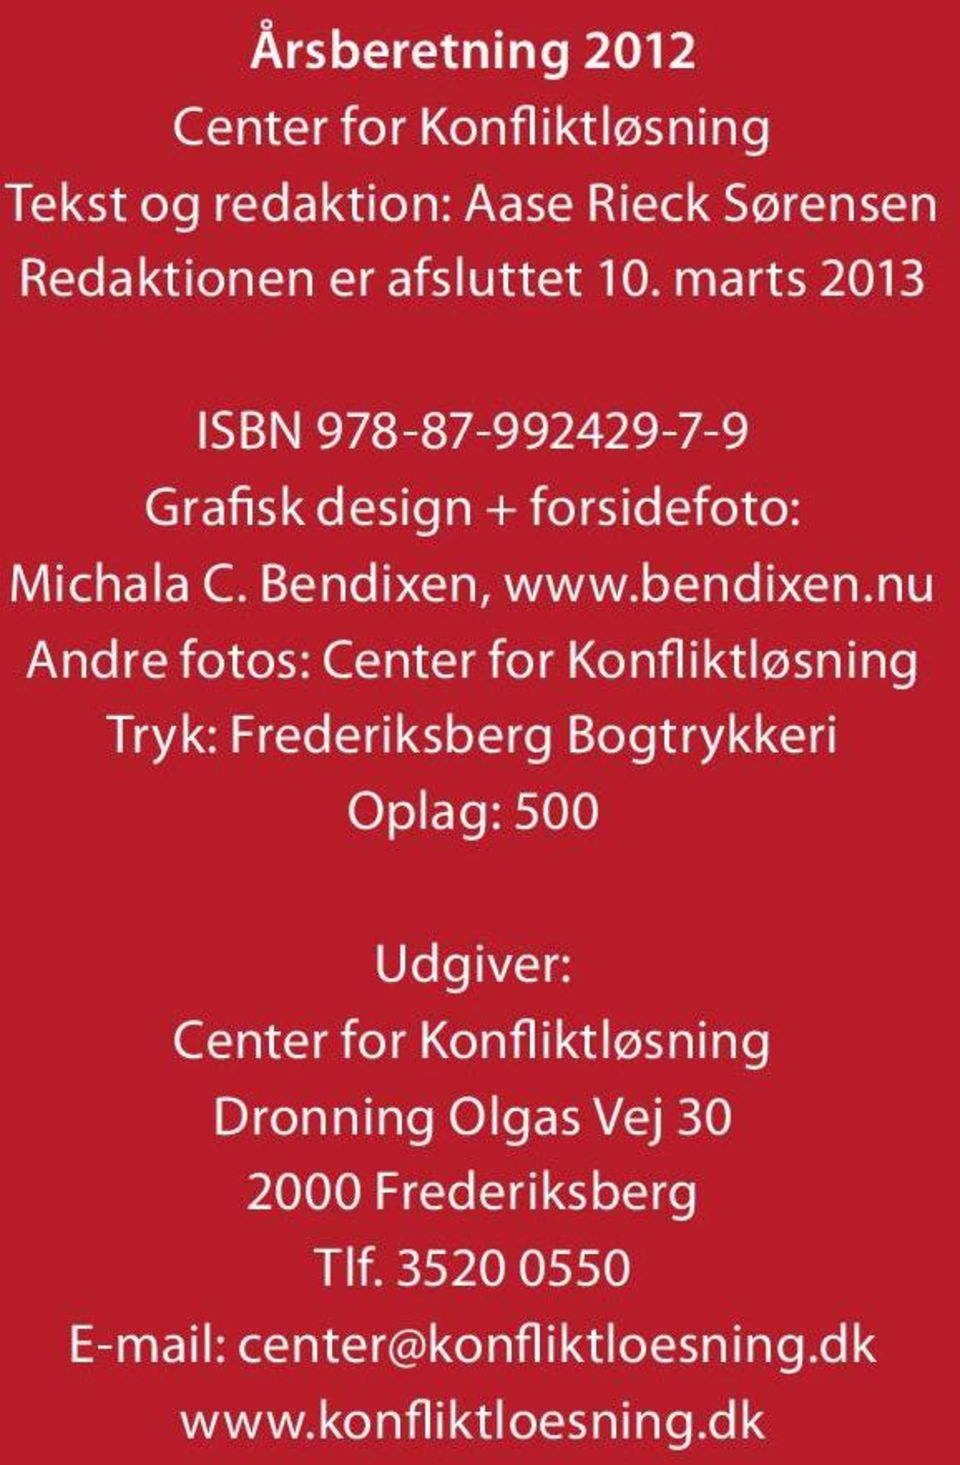 nu Andre fotos: Center for Konfliktløsning Tryk: Frederiksberg Bogtrykkeri Oplag: 500 Udgiver: Center for